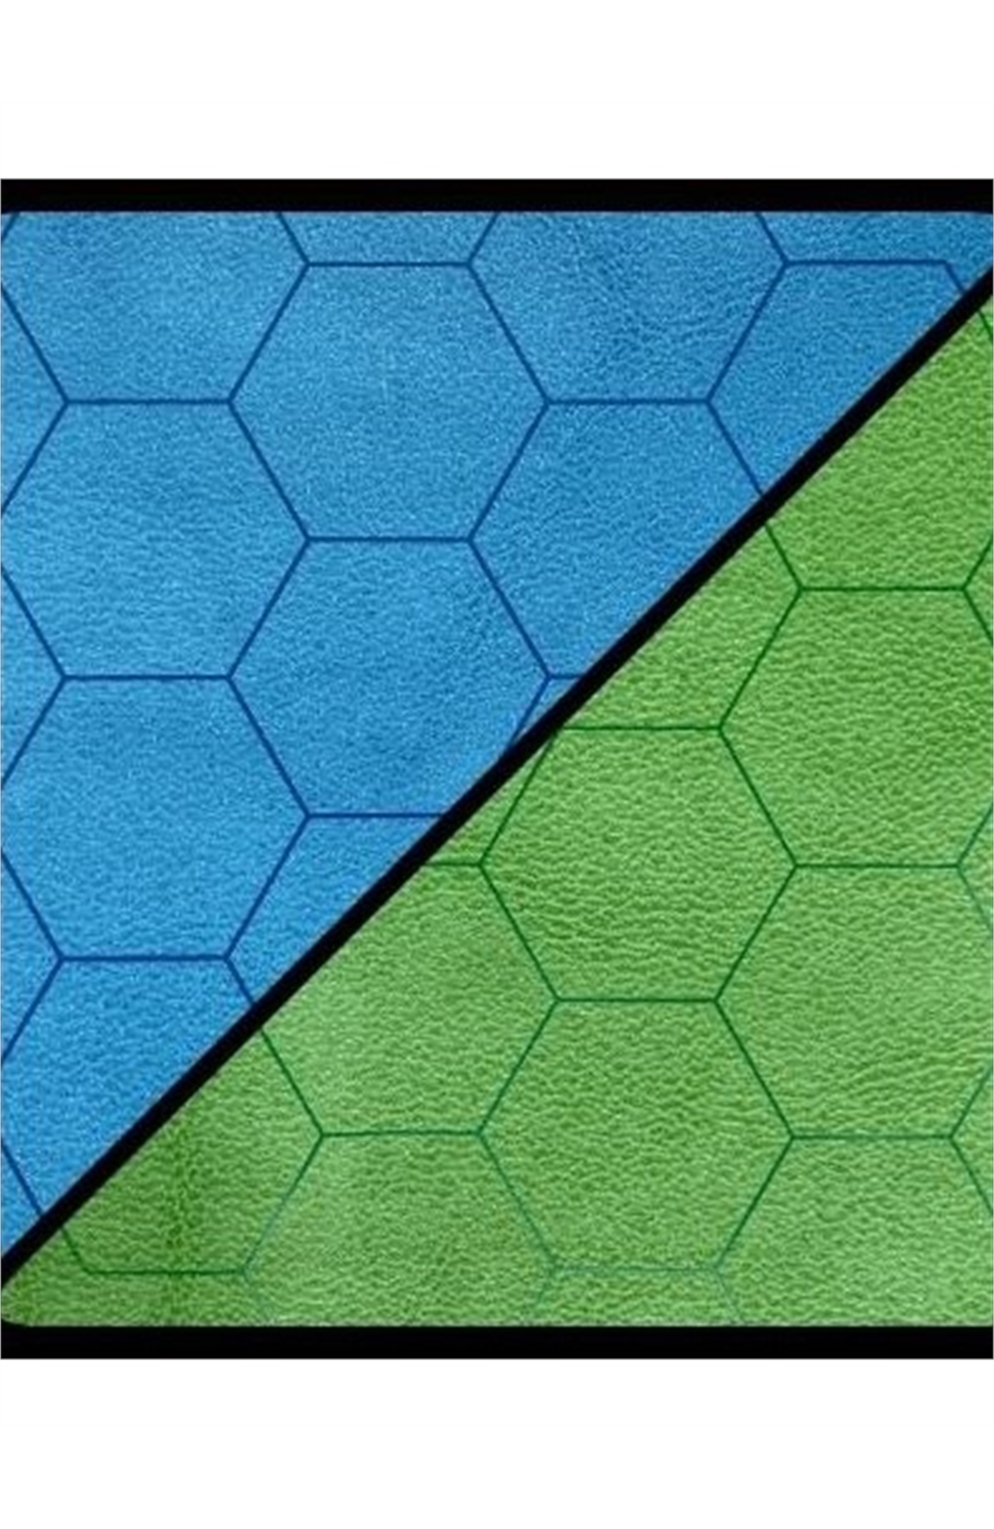 Chessex Battlemat 1" Reversible Blue-Green Hexes